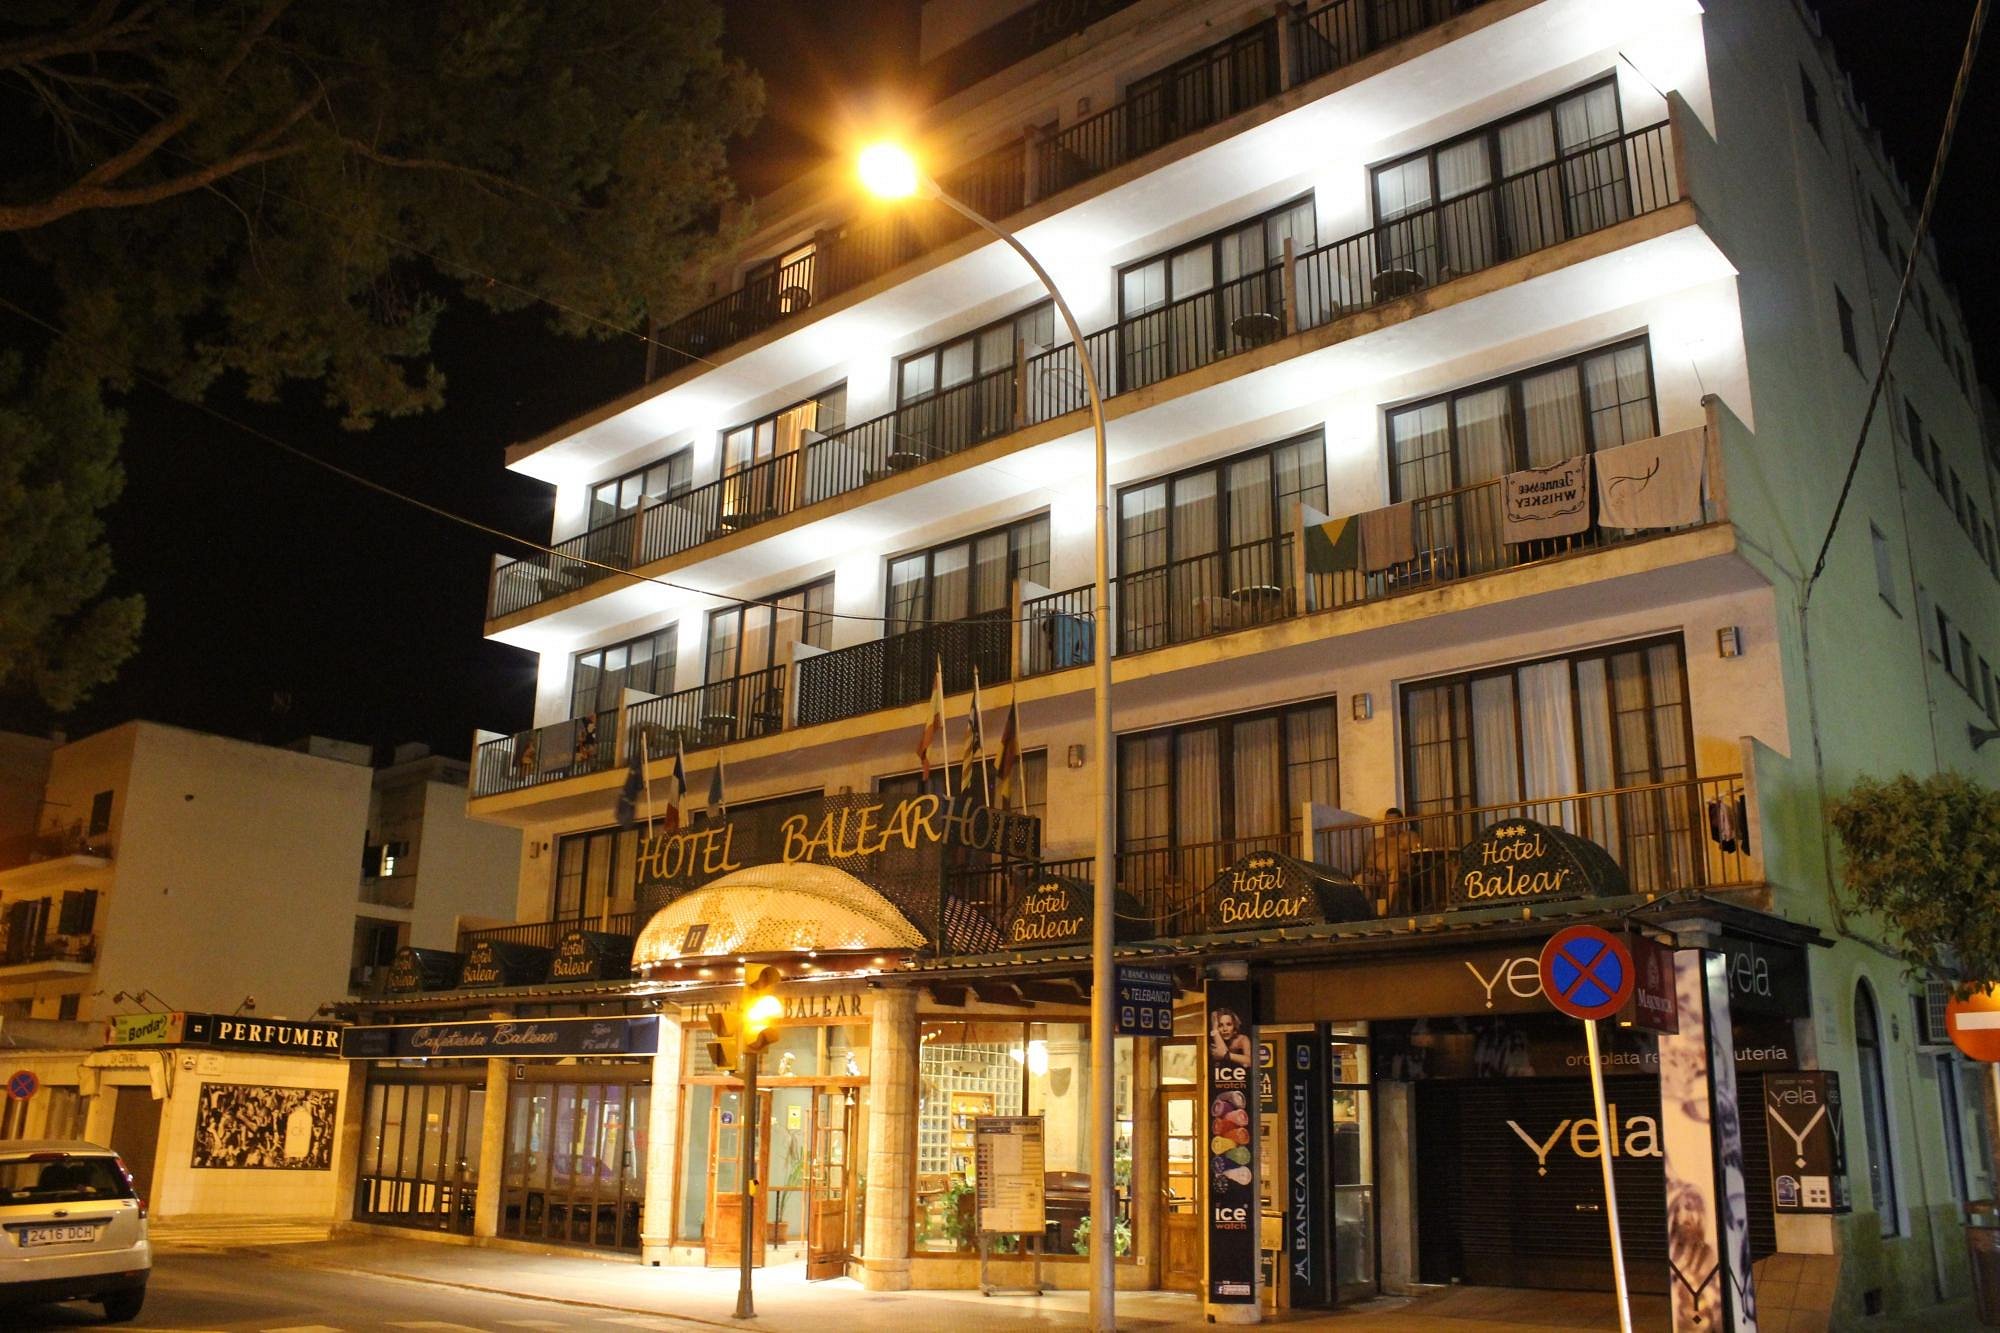 Hotel Balear image